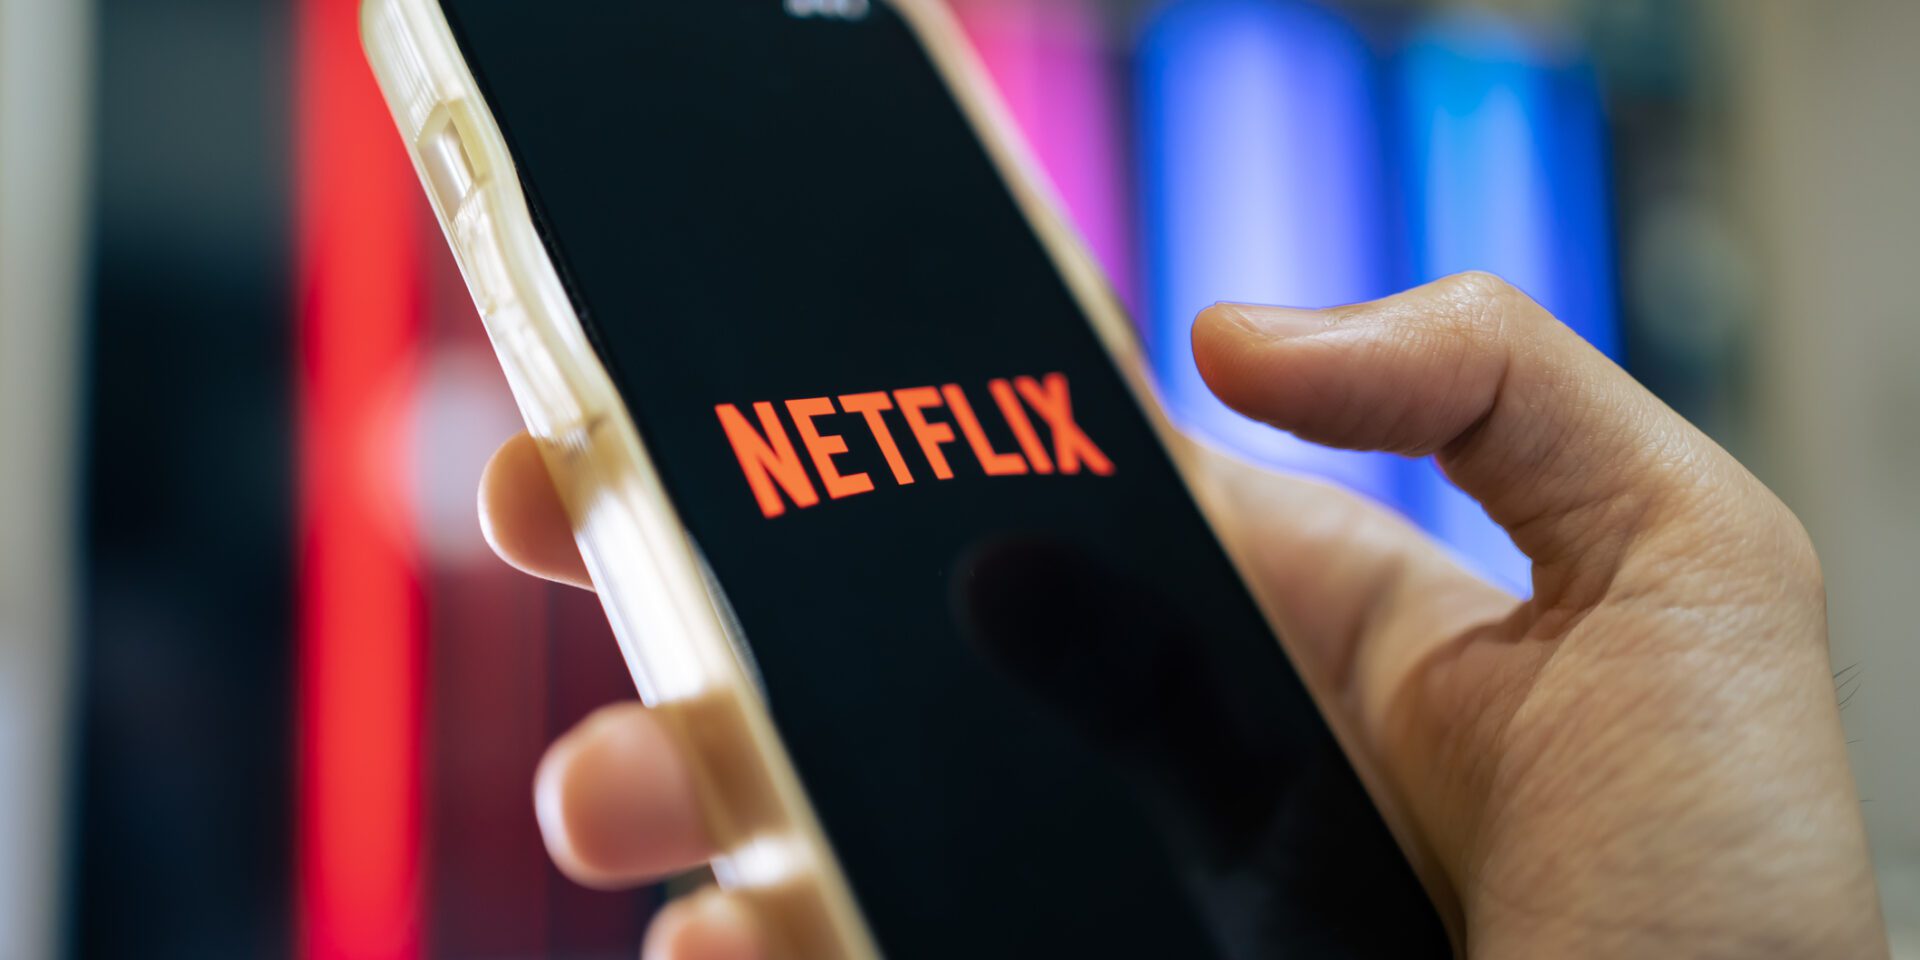 Netflix Planos: conheça os planos e assine online